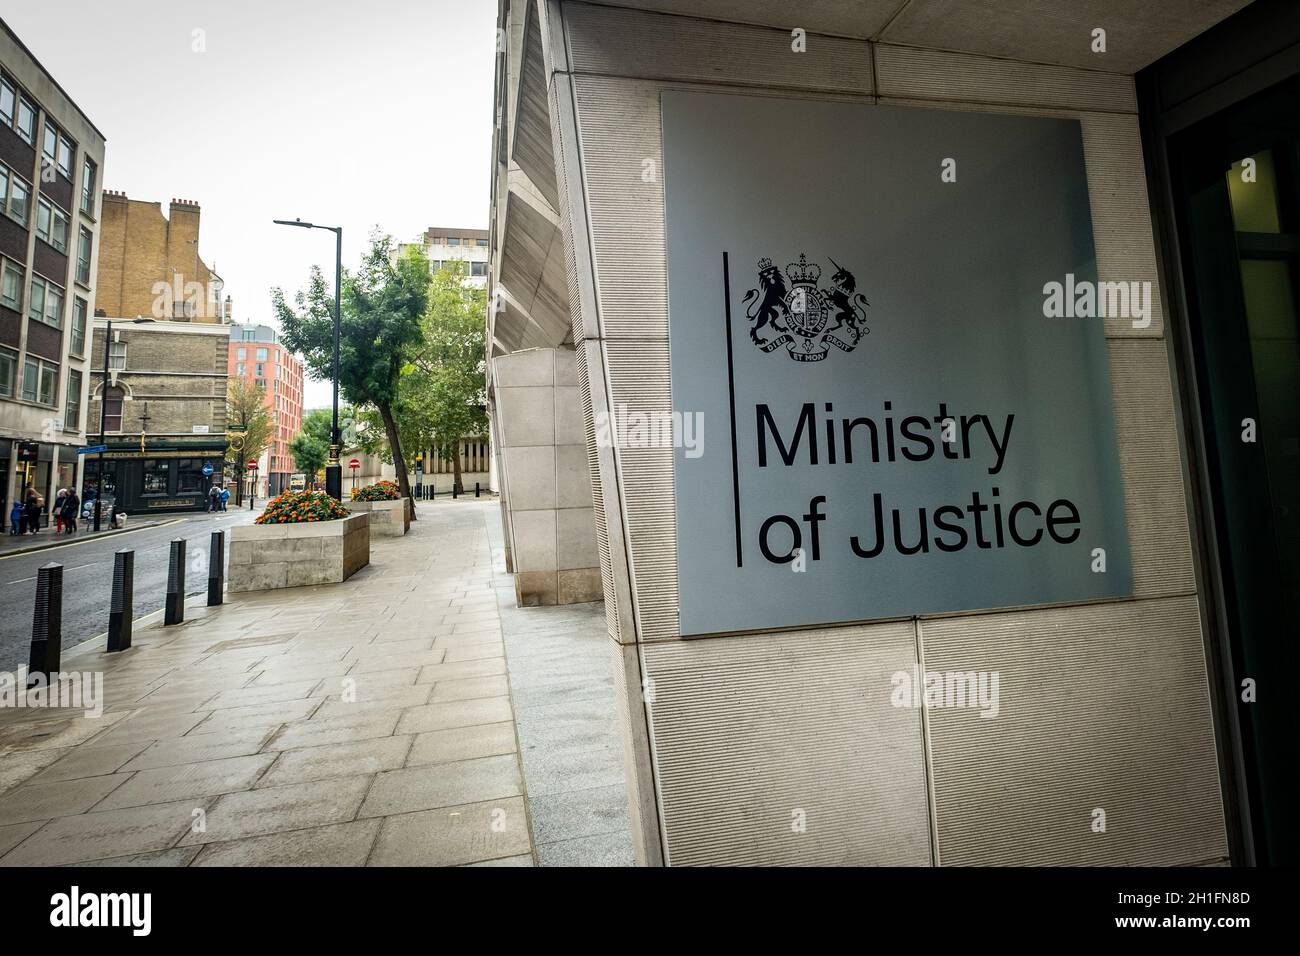 Westminster London - Beschilderung des Justizministeriums. Regierungsgebäude in Großbritannien Stockfoto